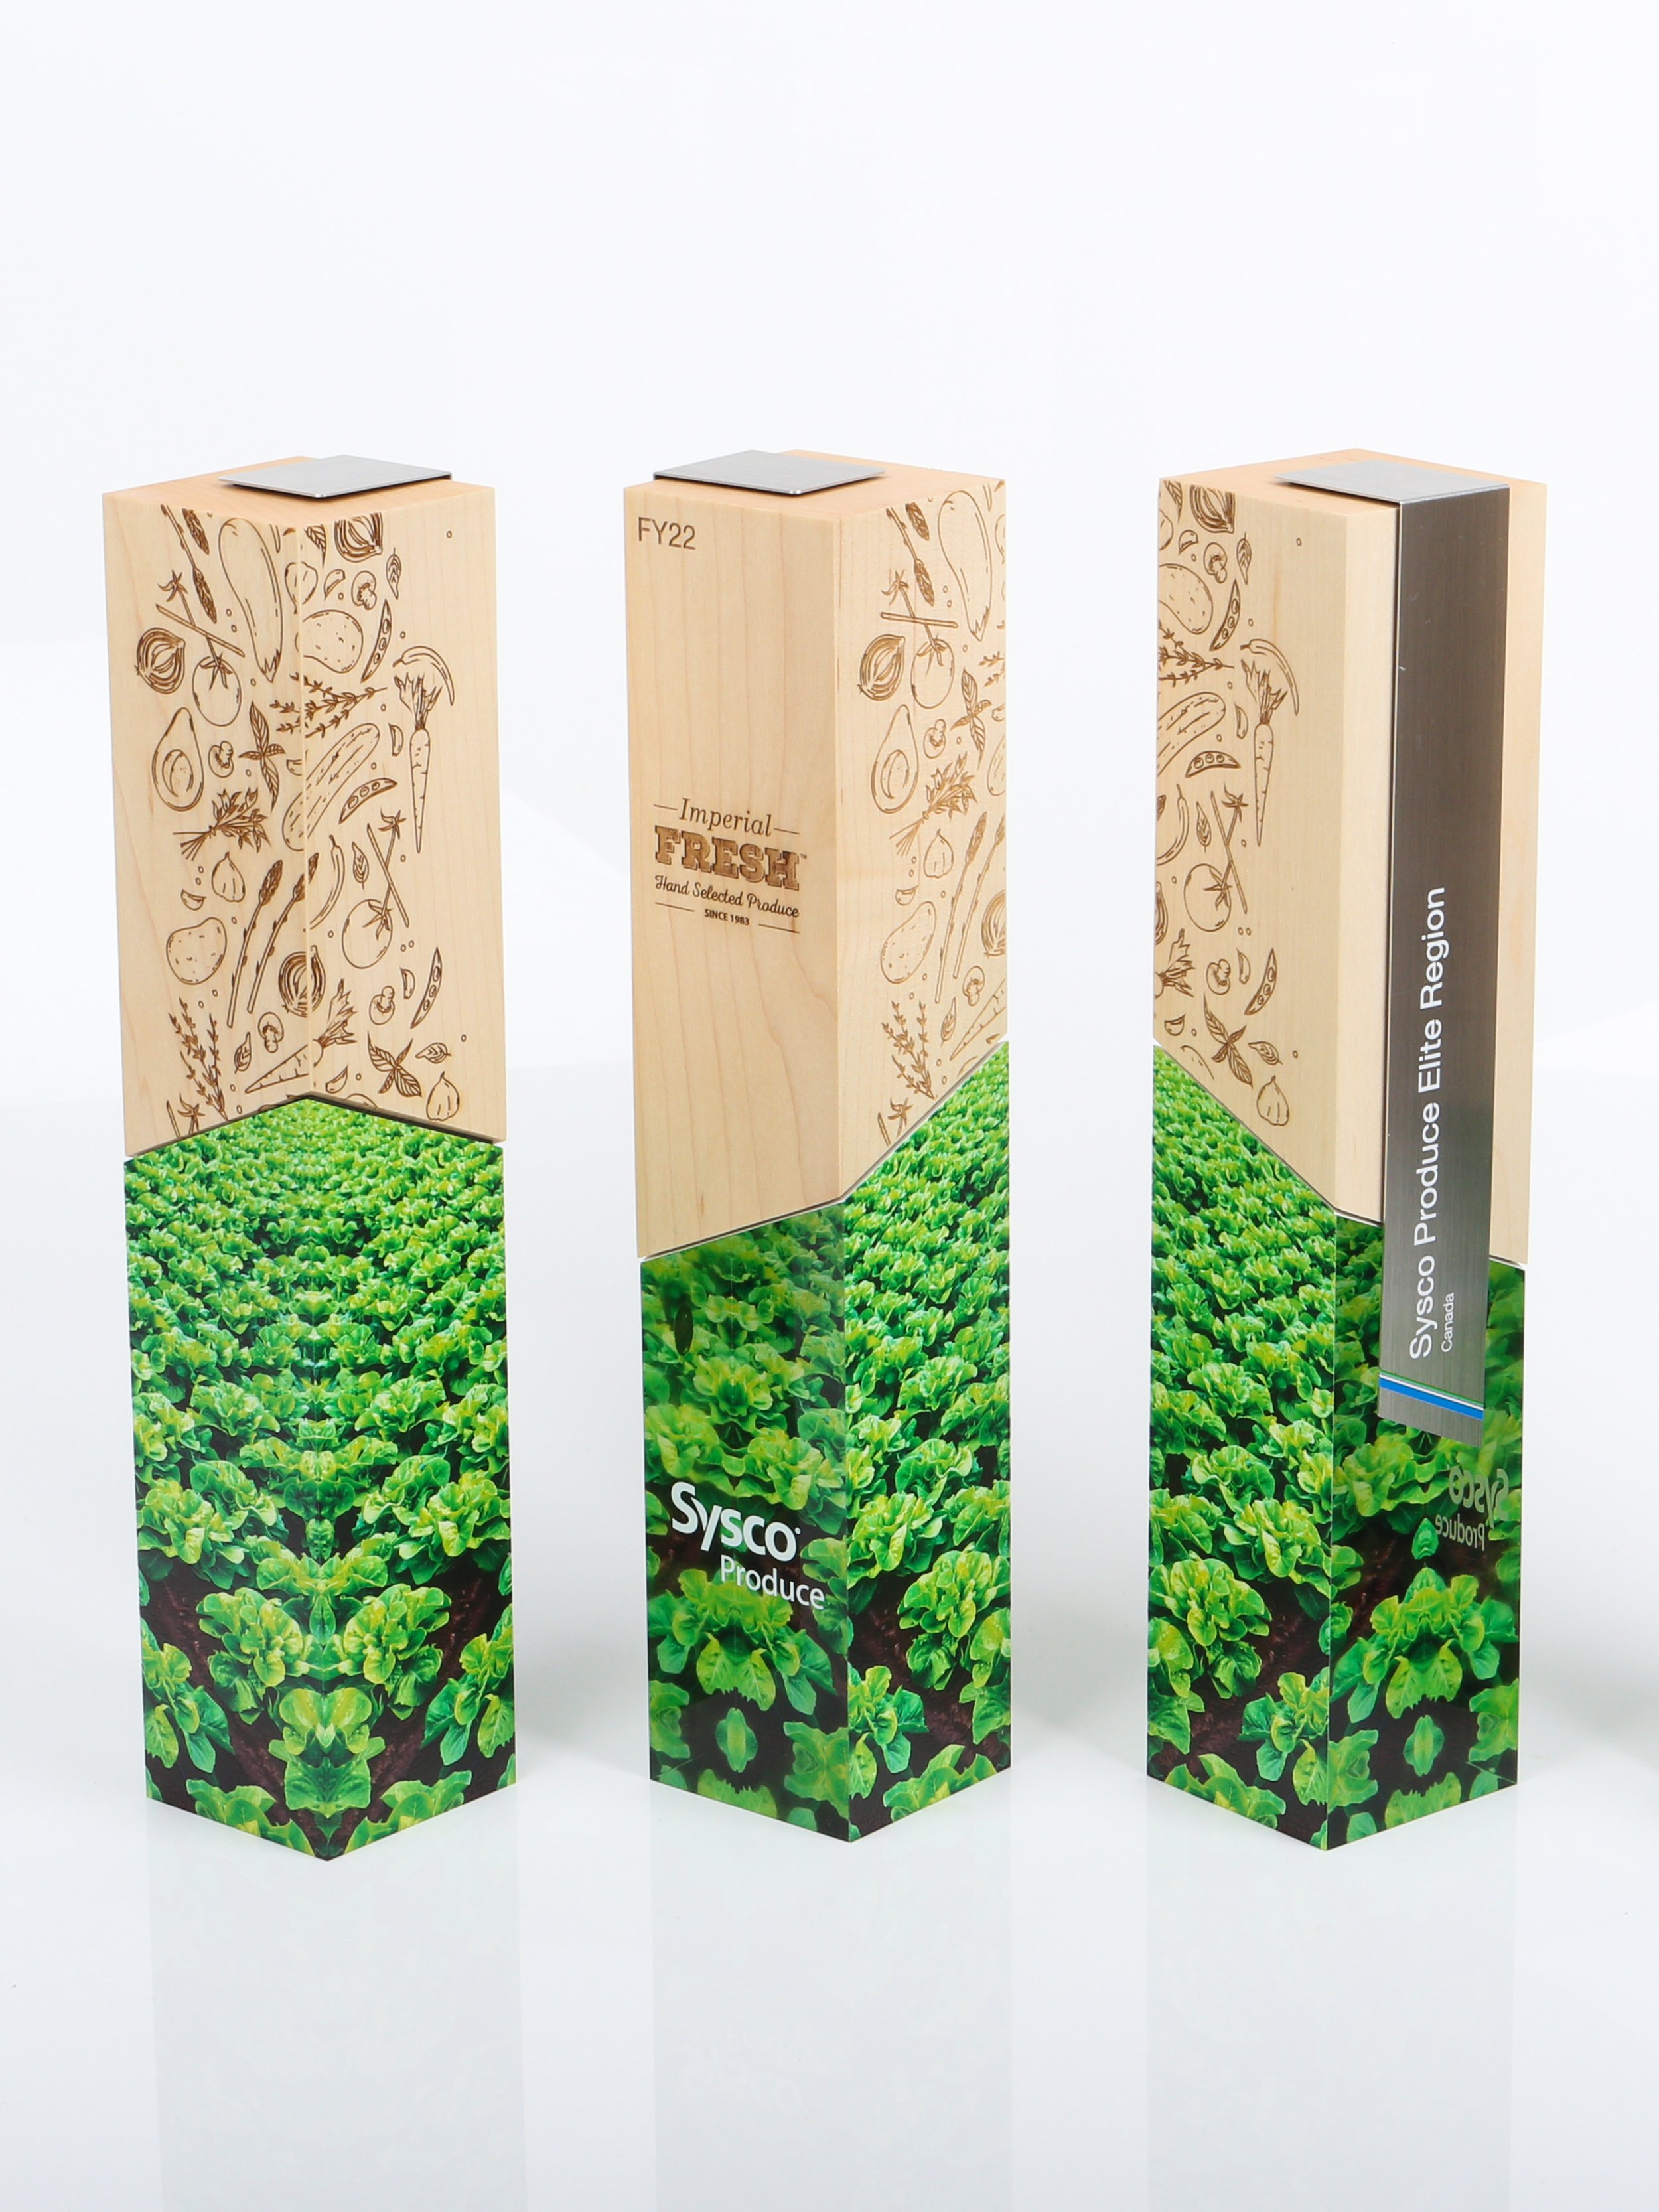 sysco produce awards half wood half acrylic 2